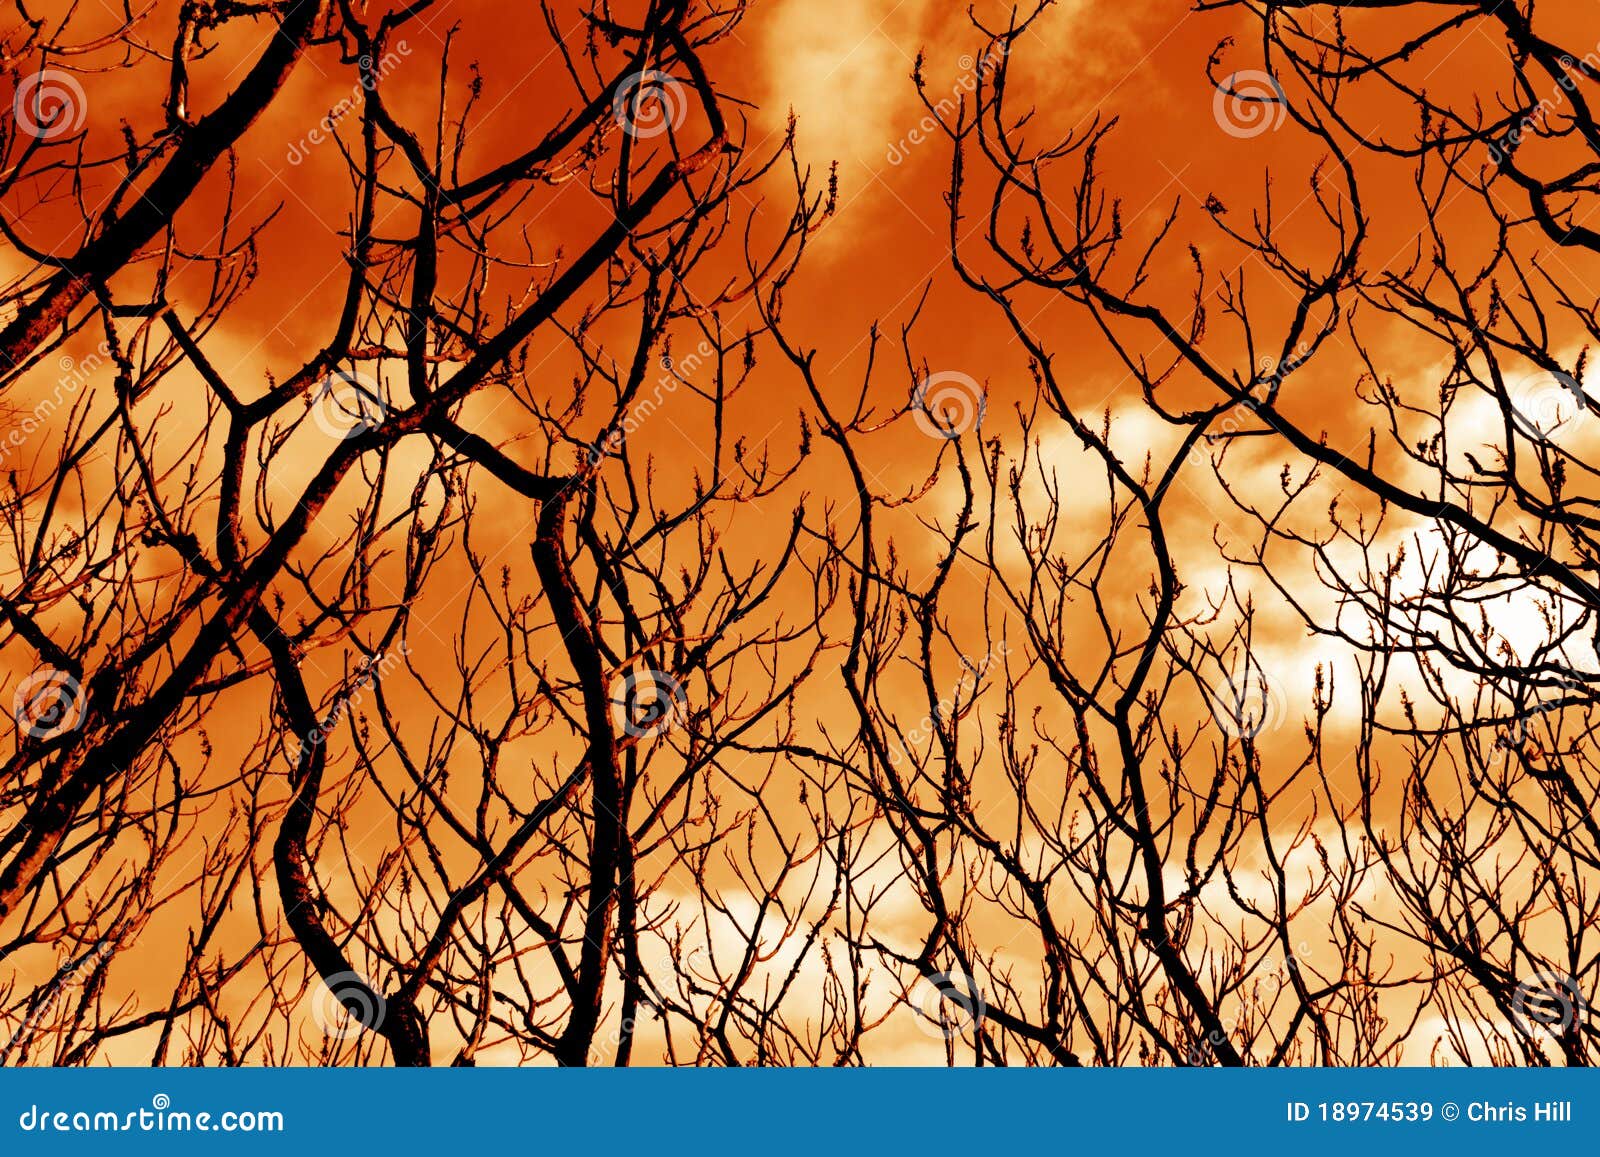 ominous barren tree branches